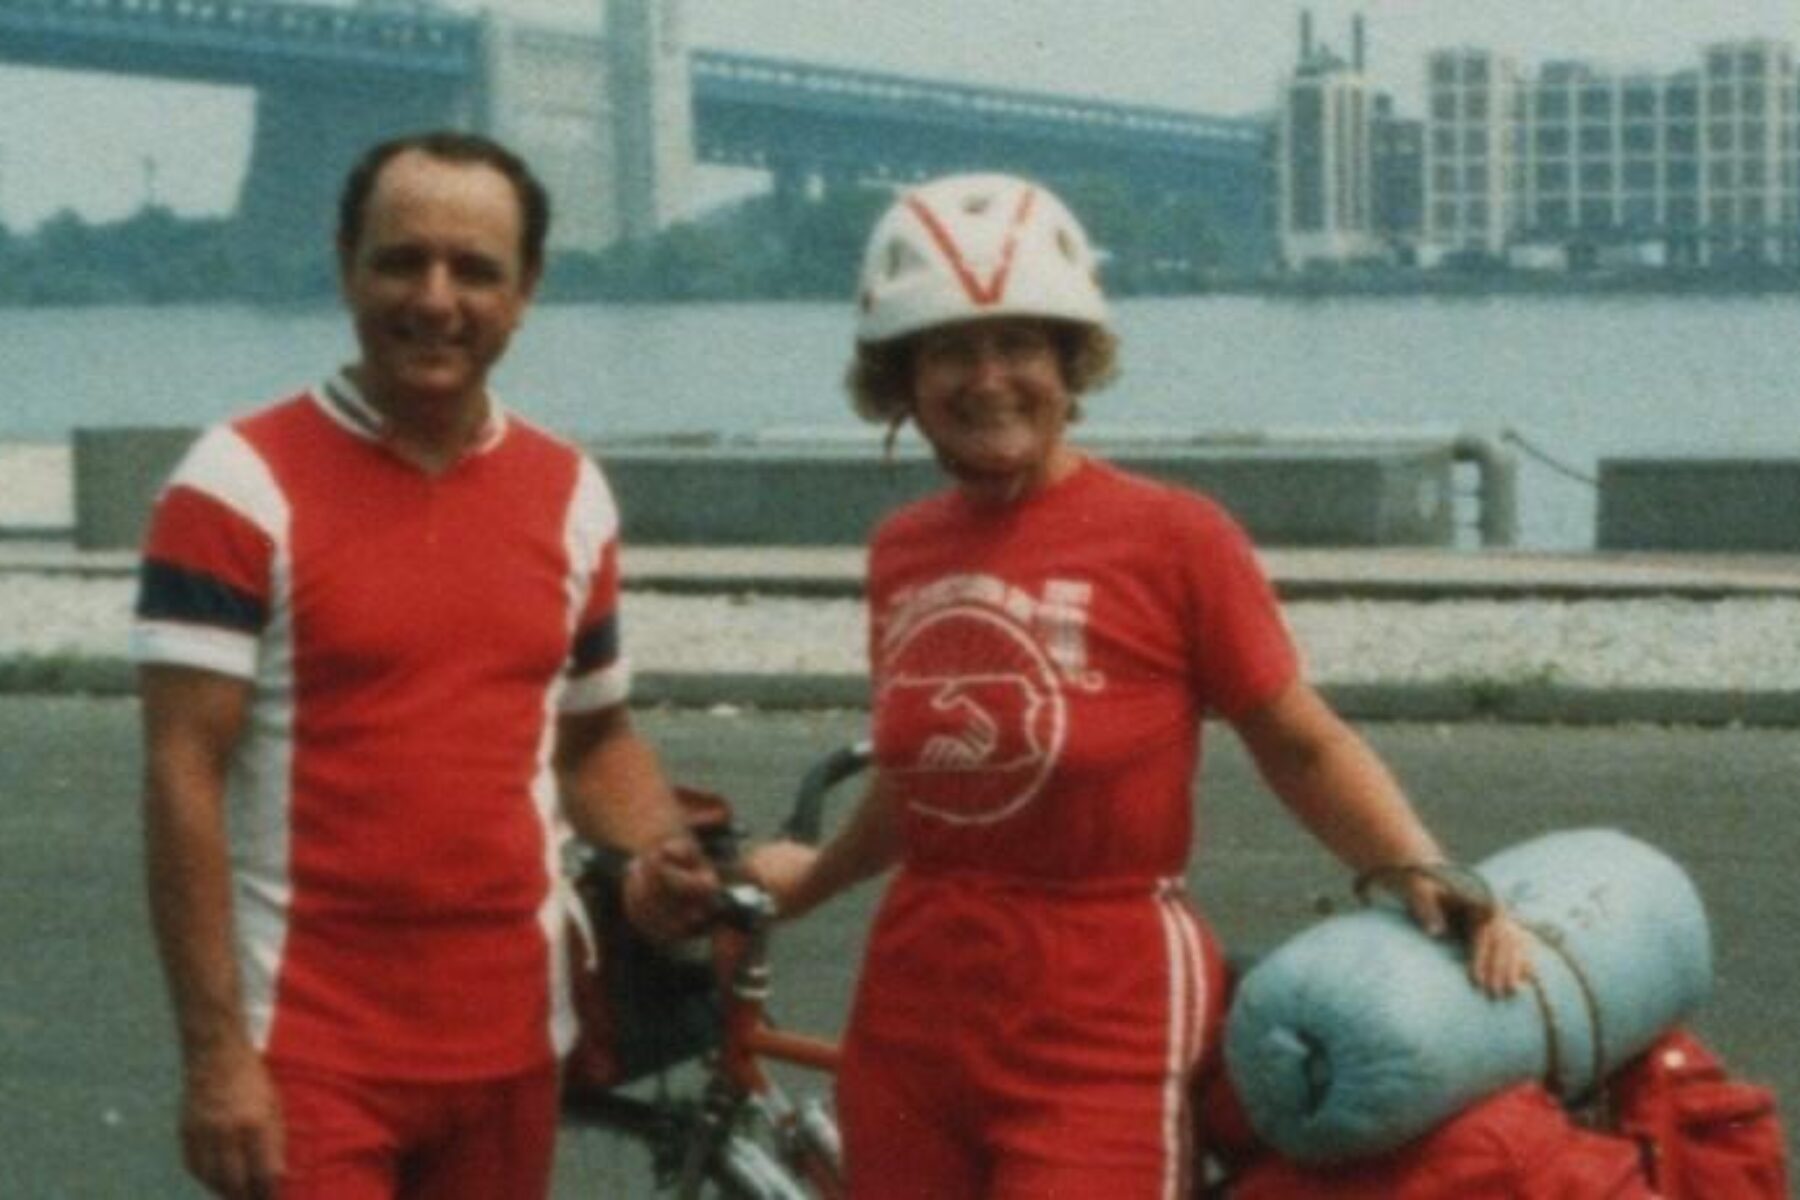 John and Janine Brobst in Philadelphia in 1981 | Photo by David Nilsson